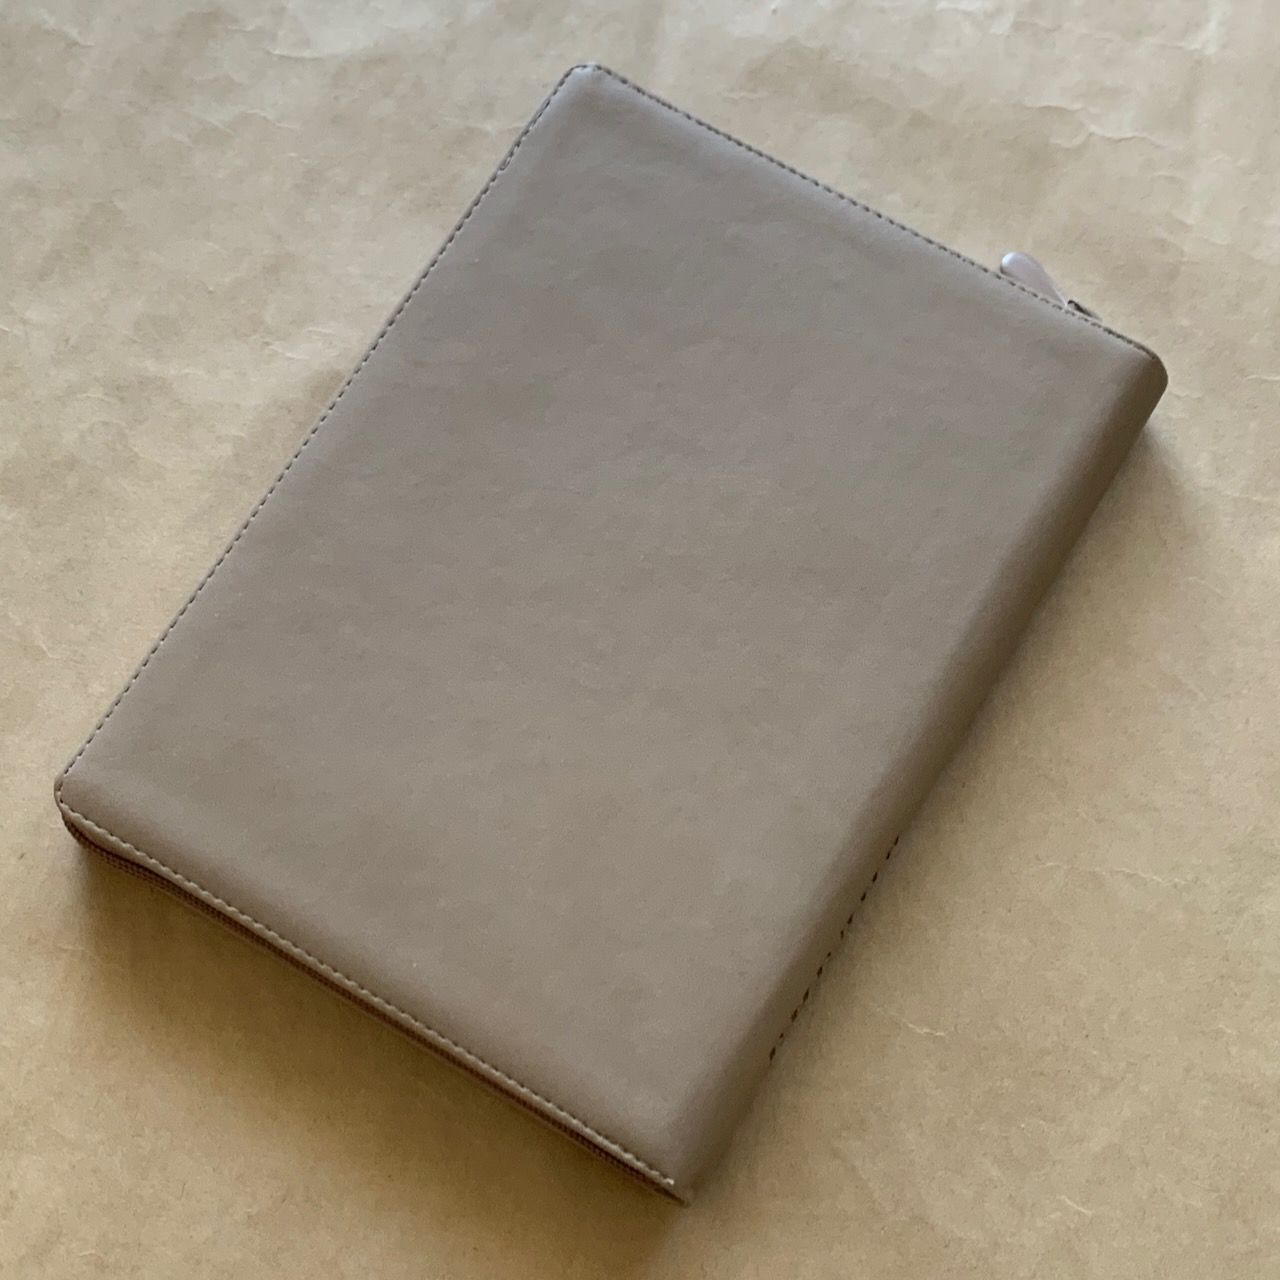 Библия 076z код D4, дизайн "Терновый венец", переплет из искусственной кожи на молнии, цвет серо-бежевый, размер 180x243 мм